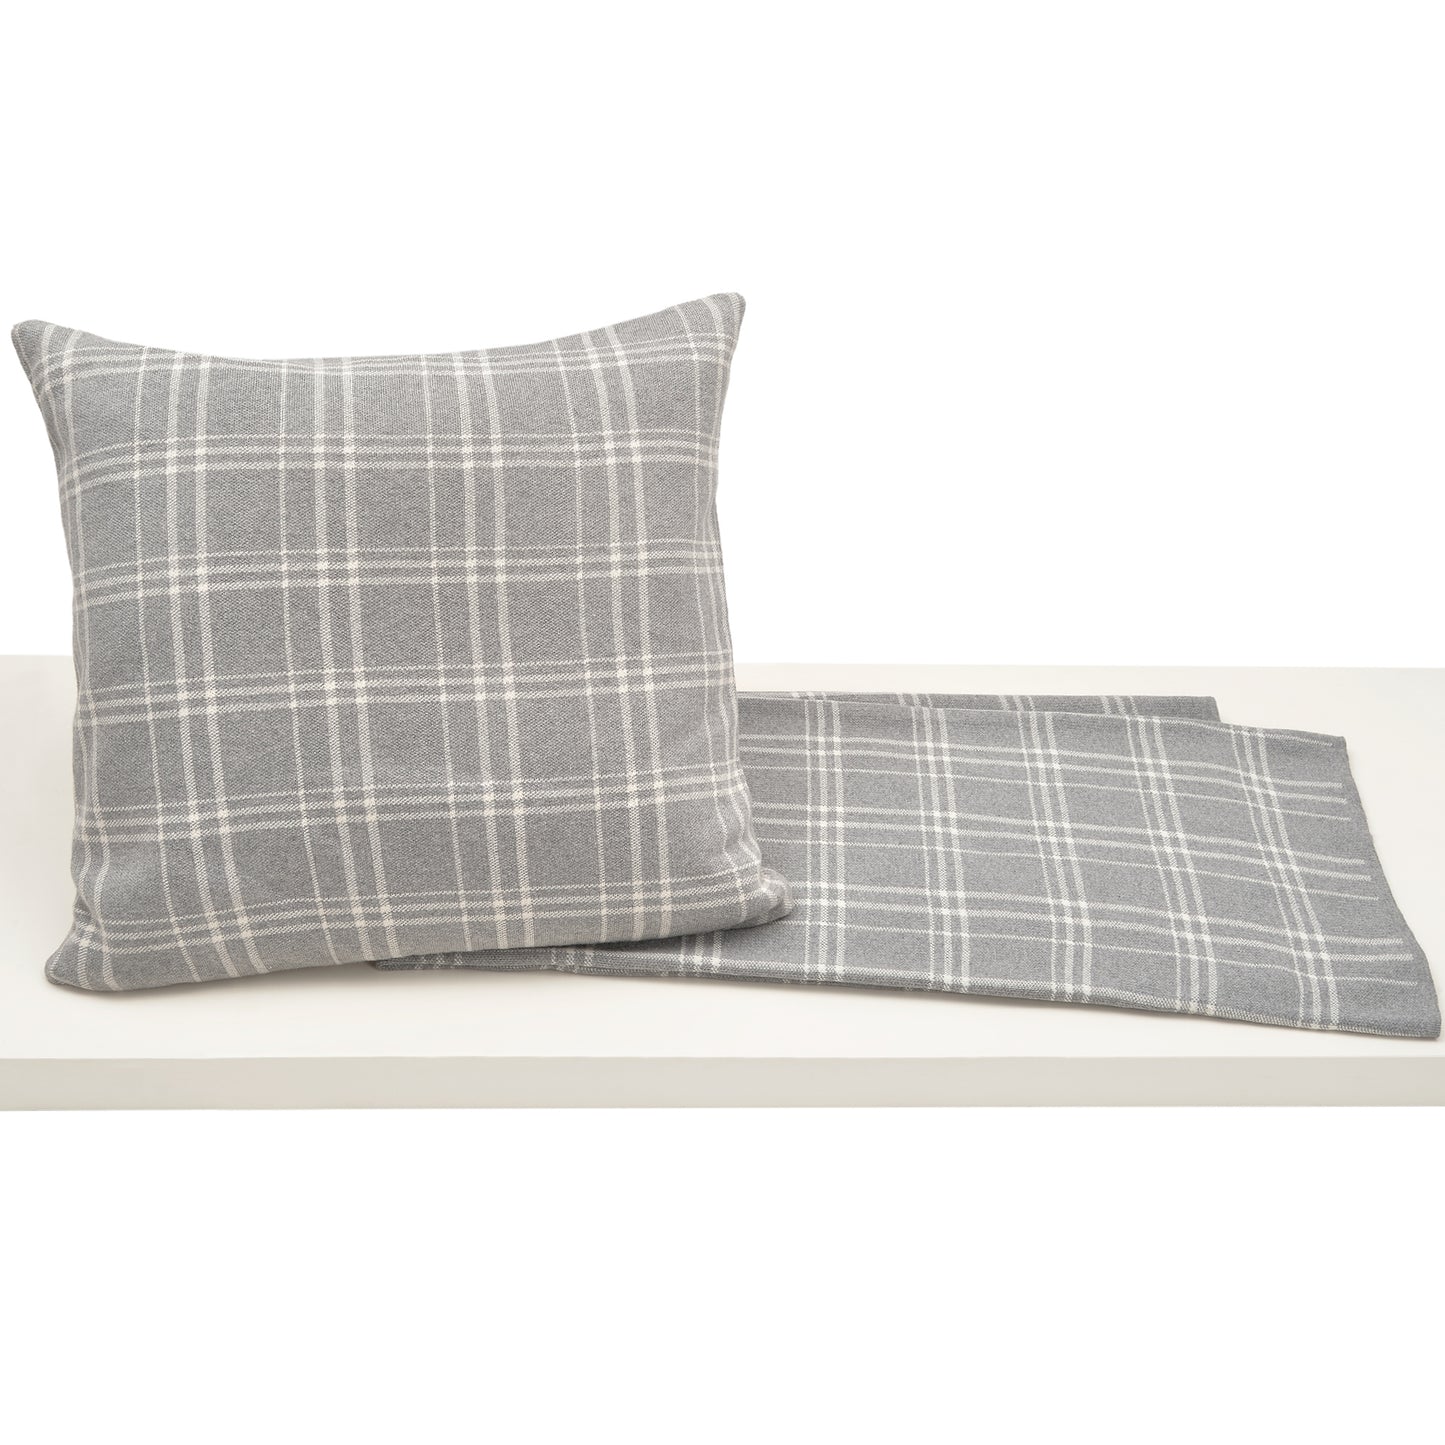 Thomas Plaid Pillow - Grey